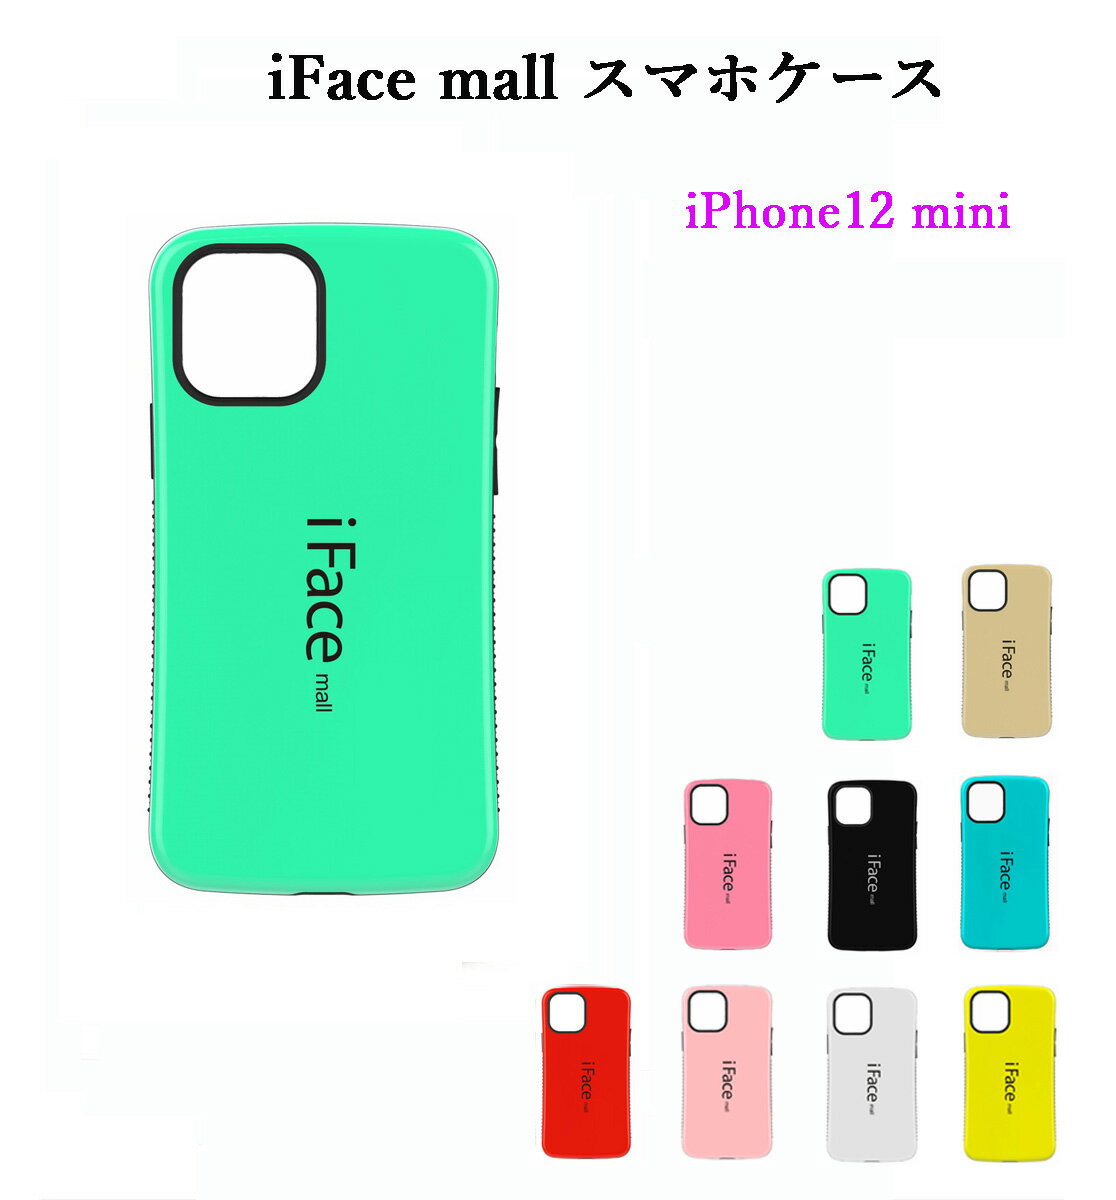 【あす楽・P10倍+クーポンあり】 iFace mall iPhone12mini ケース アイフェイス モール iPhone 12 mini カバー アイフォン12ミニ ワイヤレス充電 耐衝撃 可愛い スマホケース TPU バンパー